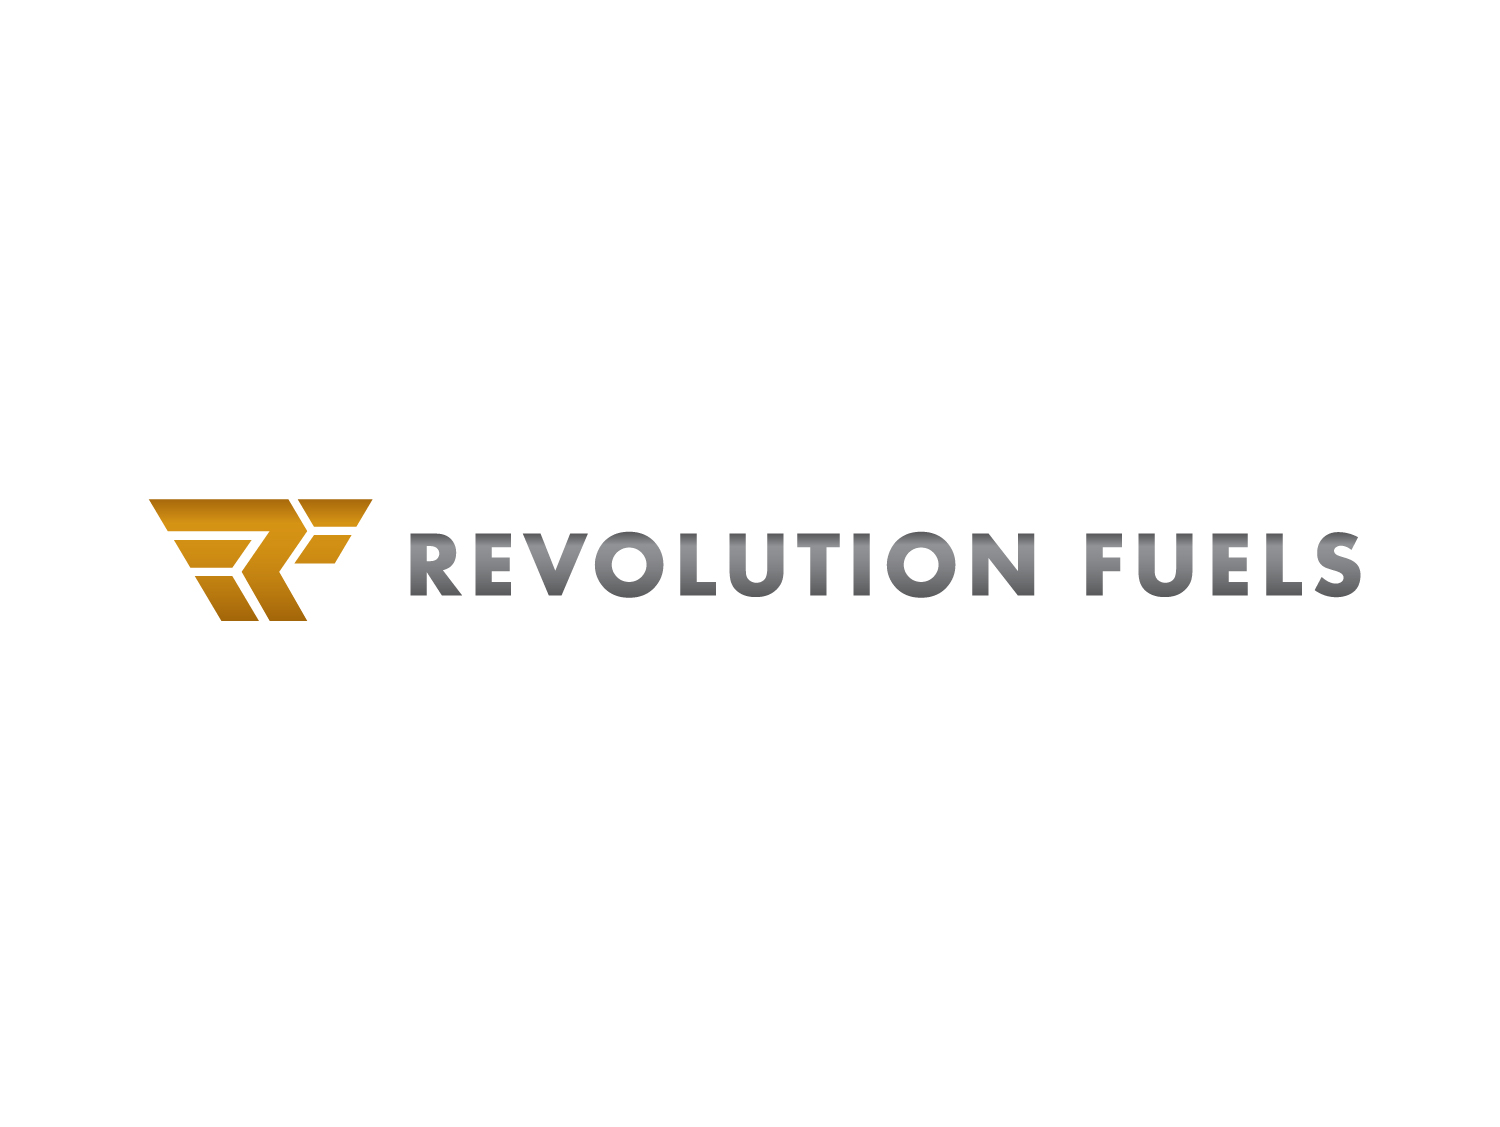 Revolution-Fuels-logo-02.jpg